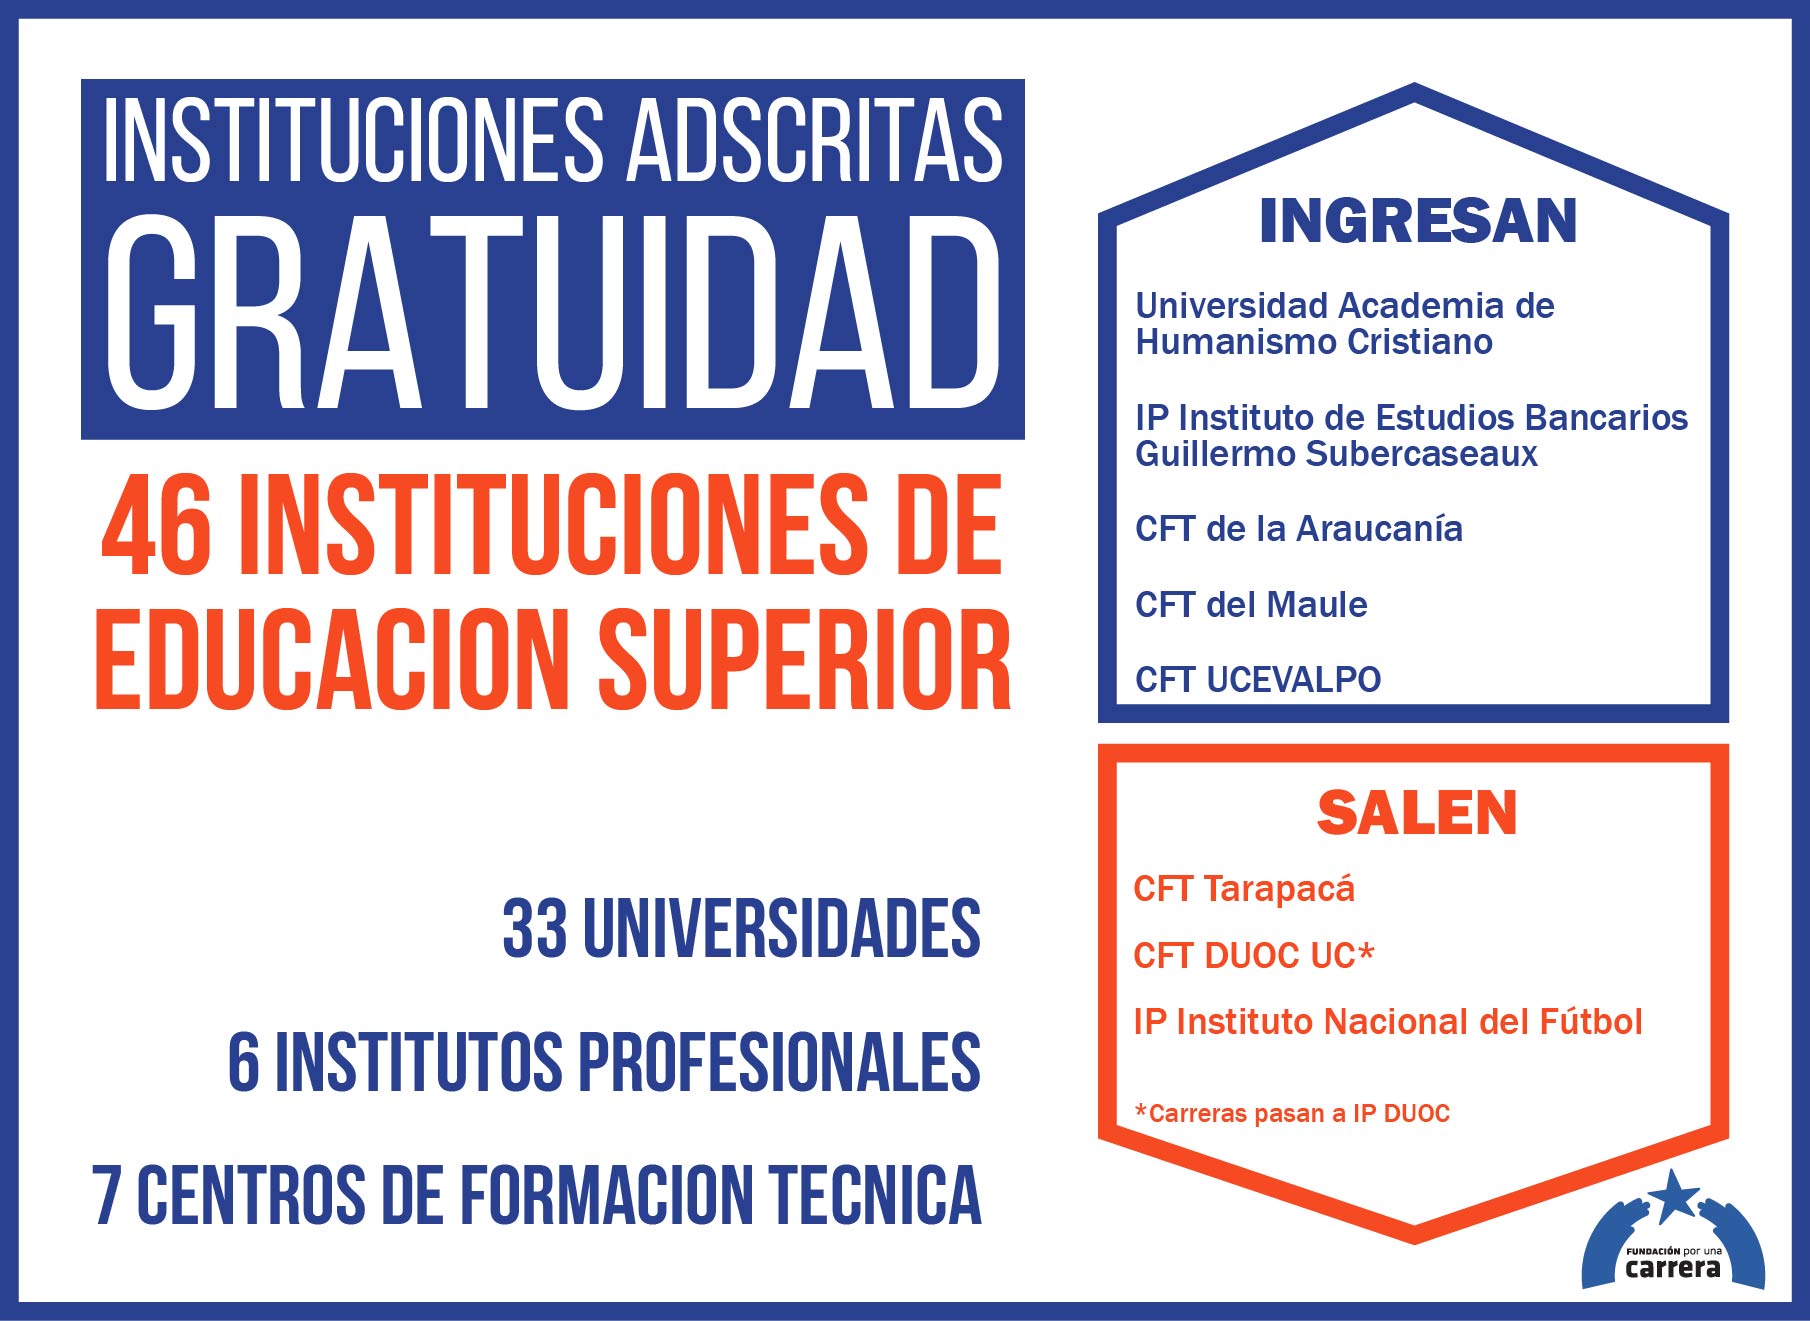 Universidades, Institutos Profesionales y Centros de Formación Técnica Adscritos a Gratuidad 2018